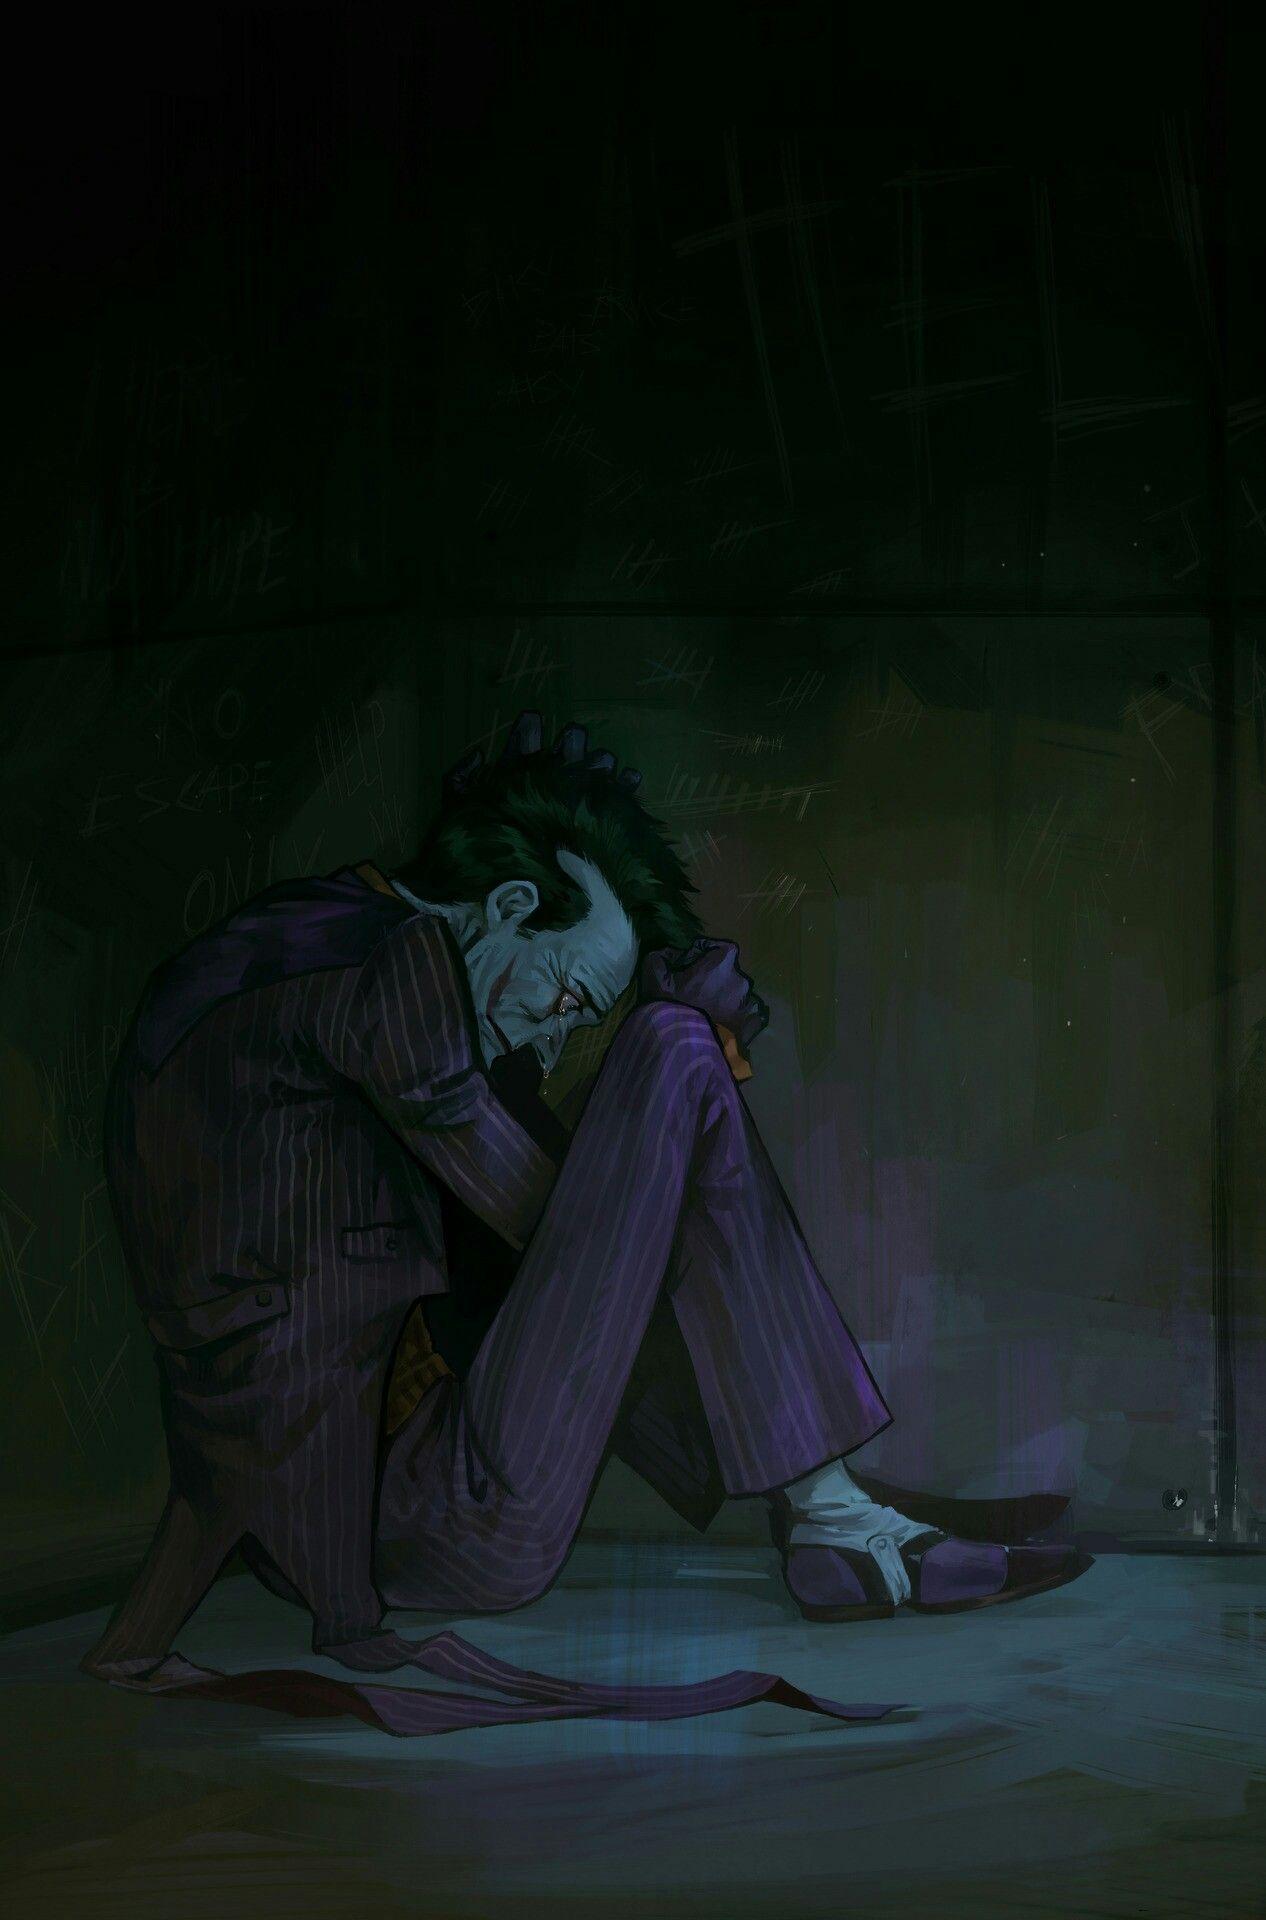 Mr. J. Joker comic, Joker art, Joker wallpaper